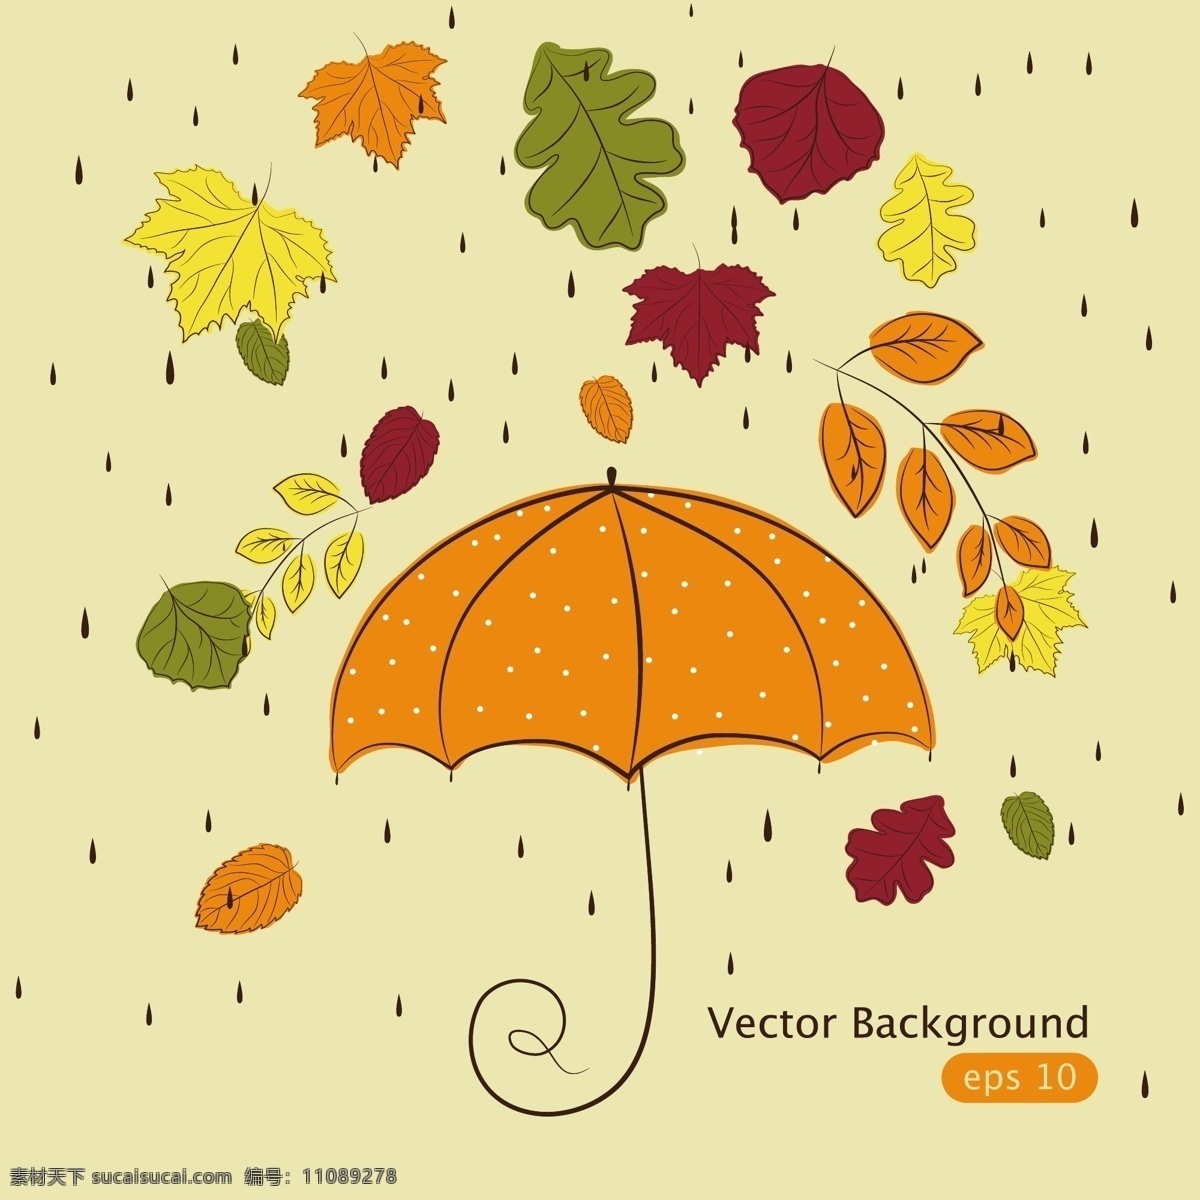 童趣 雨伞 插画 矢量 背景 枫叶 卡通 落叶 秋季 矢量图 树叶 雨滴 水玉点 日常生活